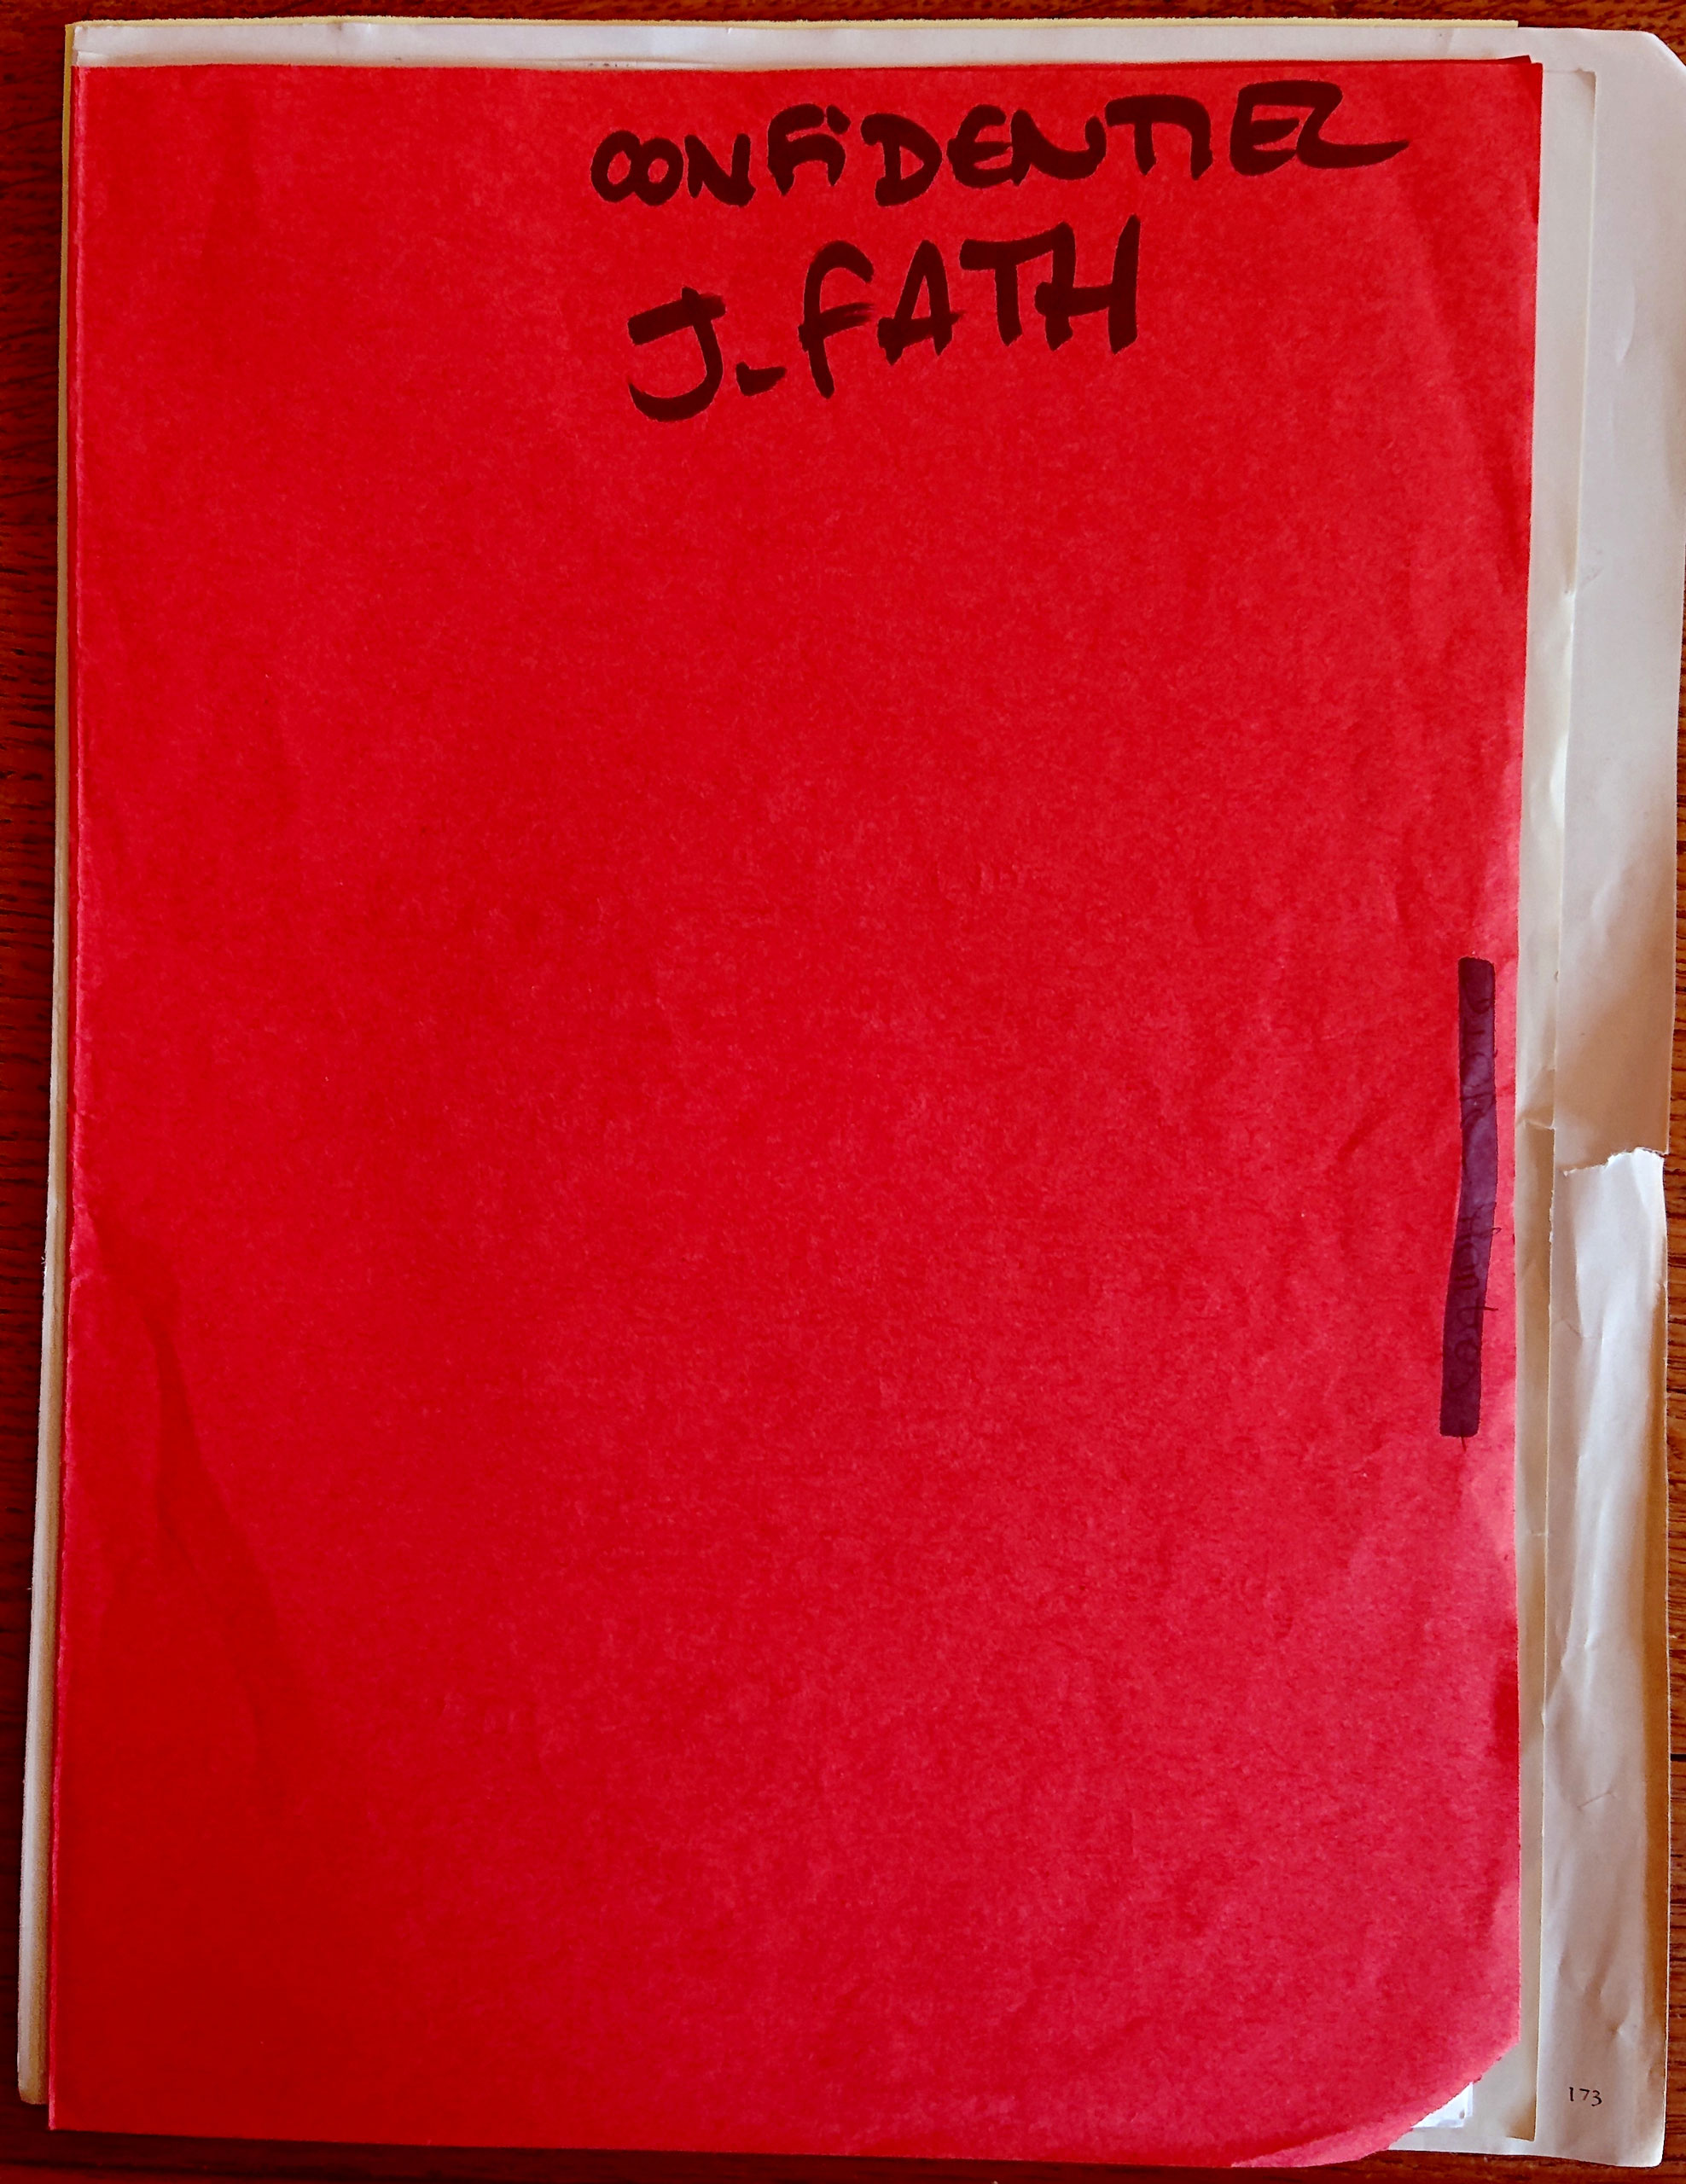 Parmi la masse des documents sur Jacques Fath conservés au Musée des arts décoratifs, une intrigante chemise rouge...<br><br>